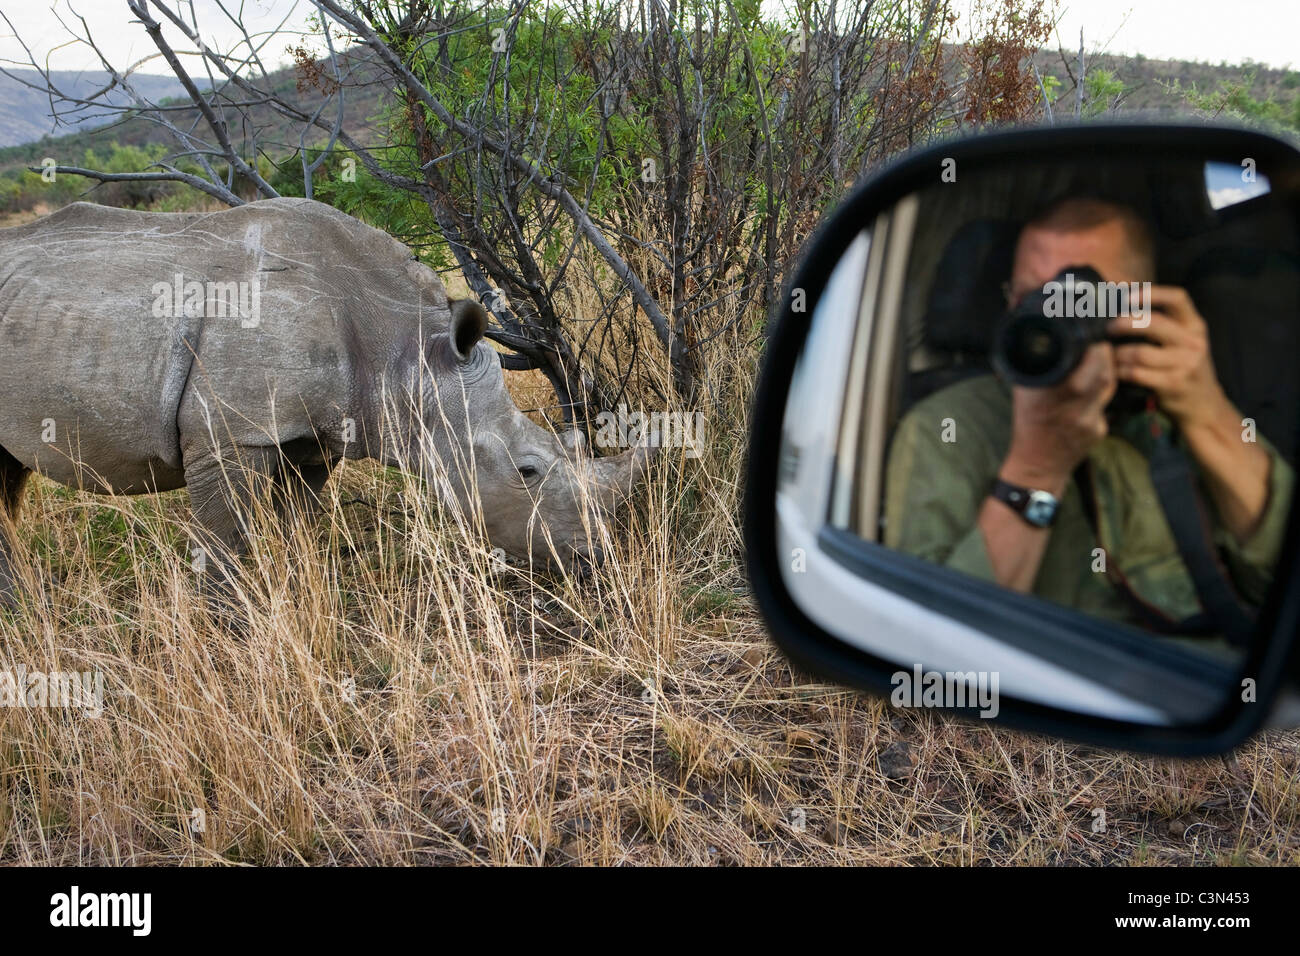 Pilanesberg National Park Tourist, Fotograf Frans Lemmens, die Bilder von weißen Nashörner, Rhinocerotidae), mit Spiegel des Autos. Stockfoto